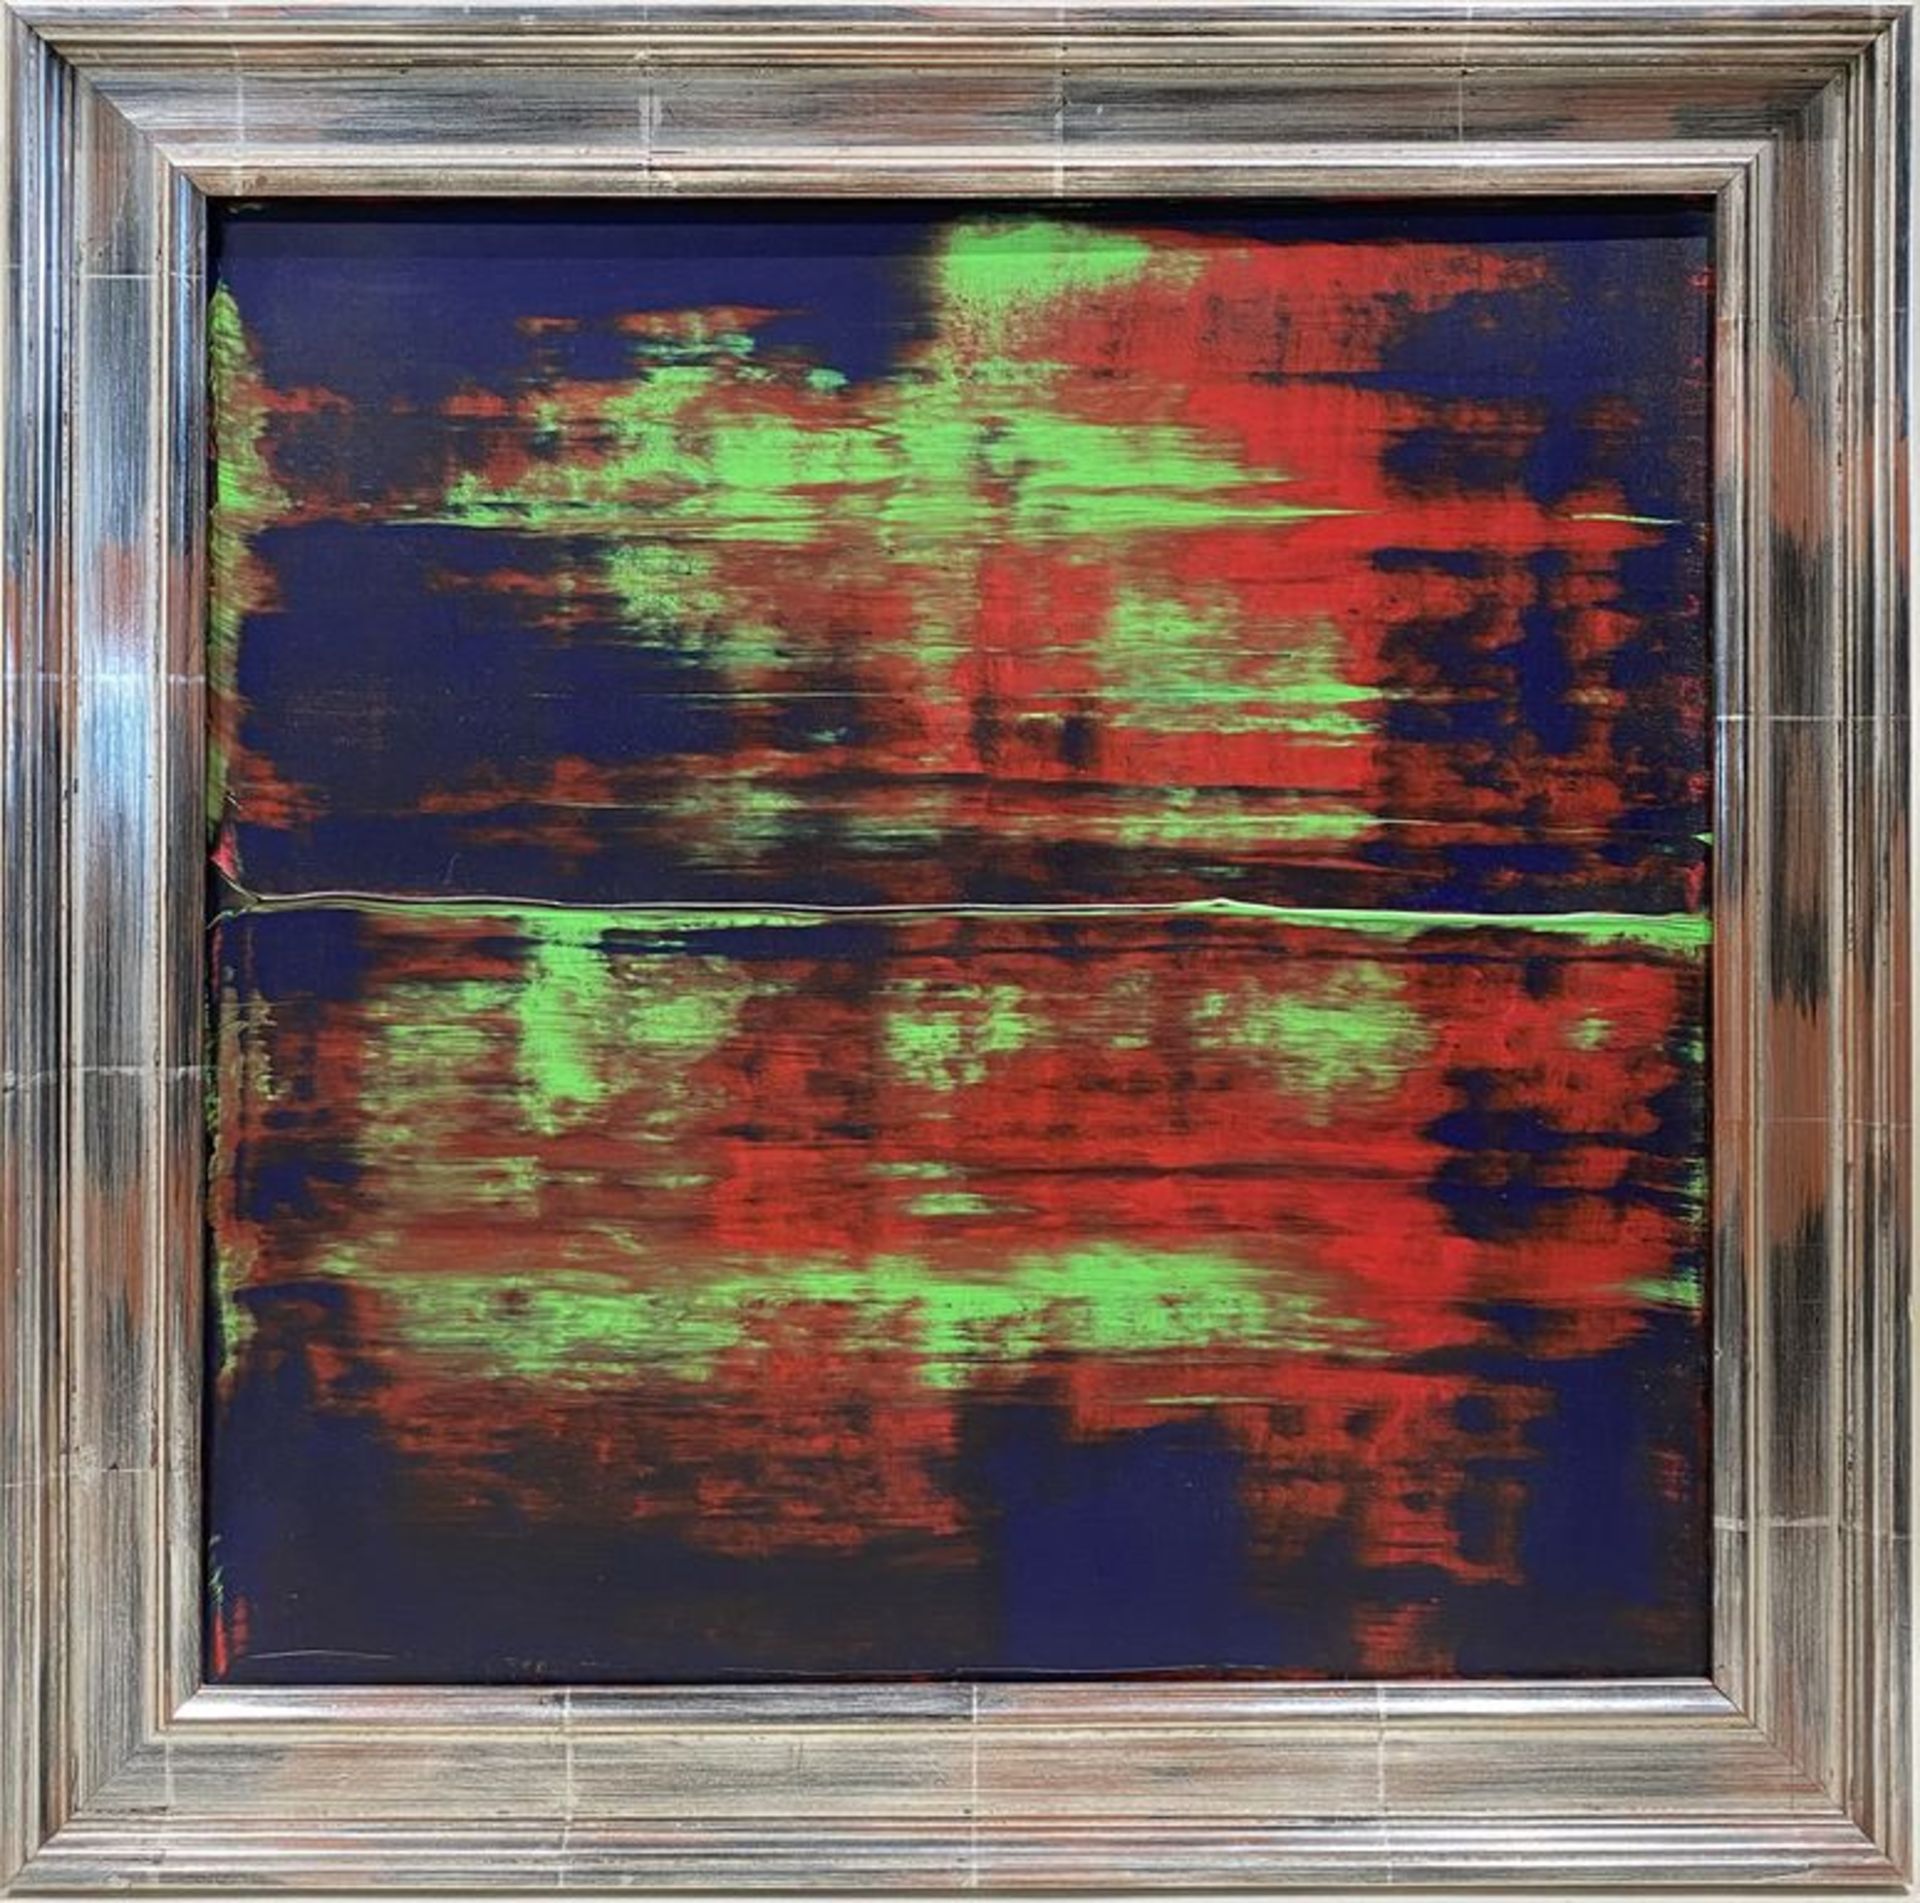 Unbekannter Maler (um 1995) Abstrakte Komposition in Blau, Rot und Grün. Acryl/Lwd., verso unleserli